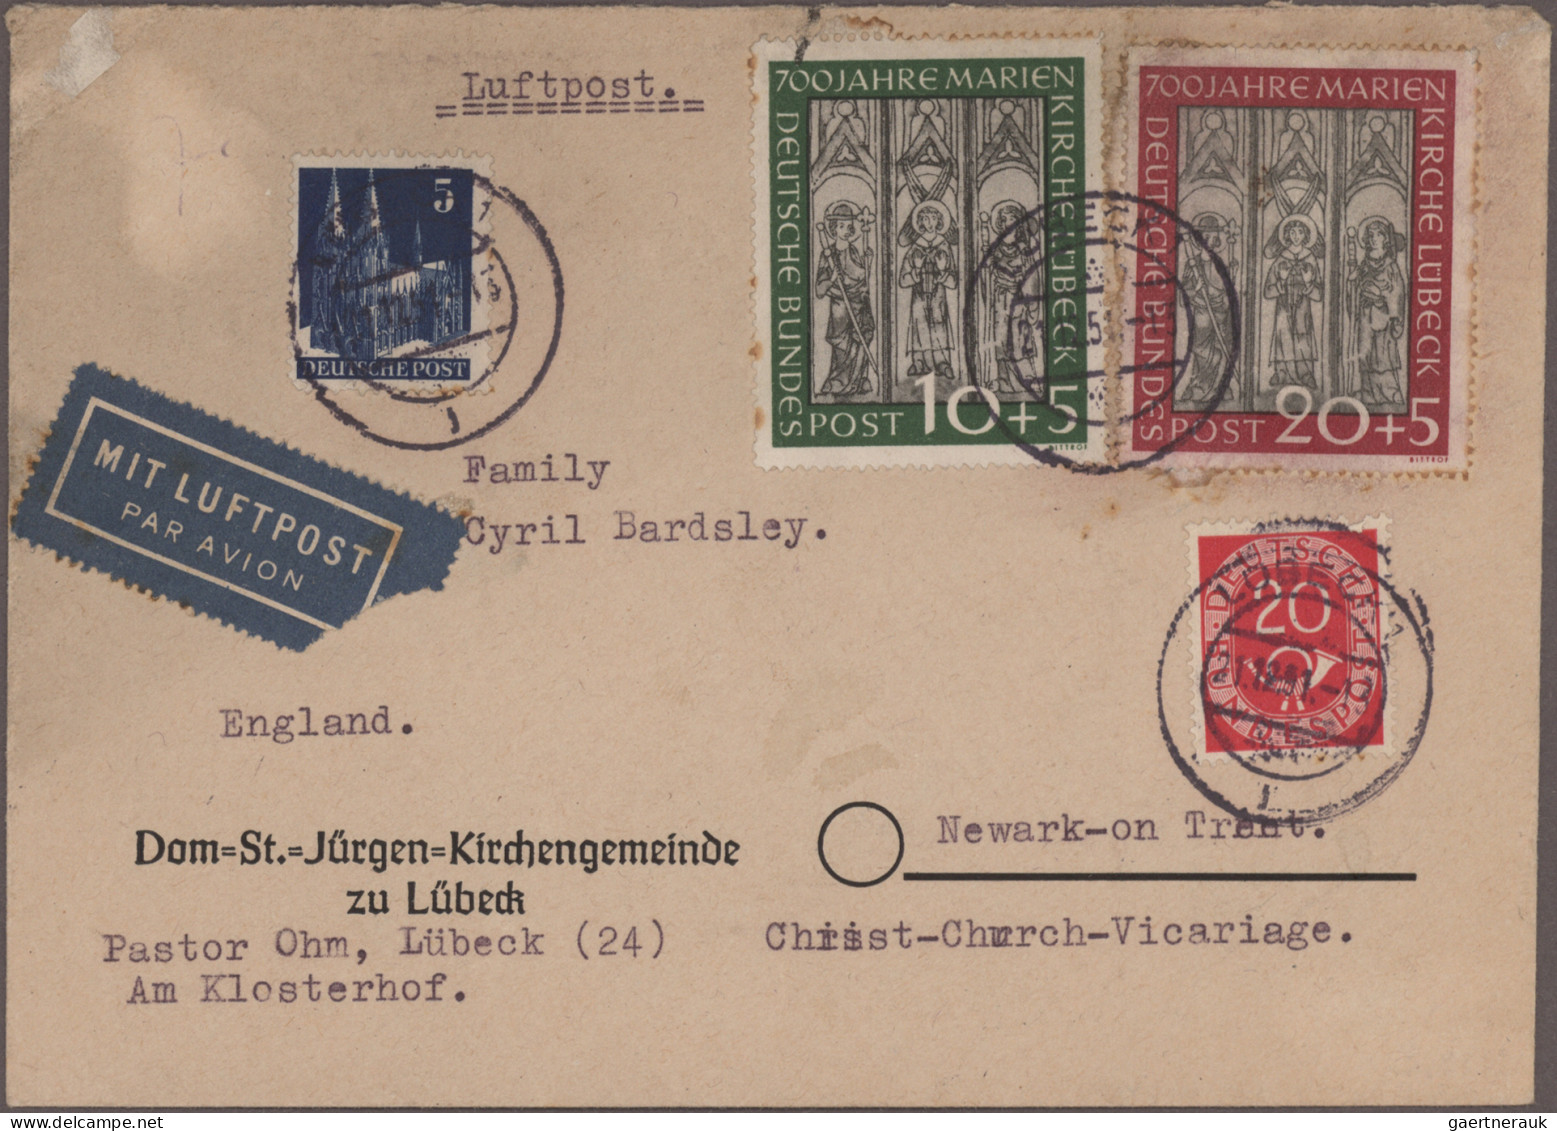 Nachlässe: Gewaltiger Posten Briefe und Karten "Nachkriegsdeutschland" mit siche